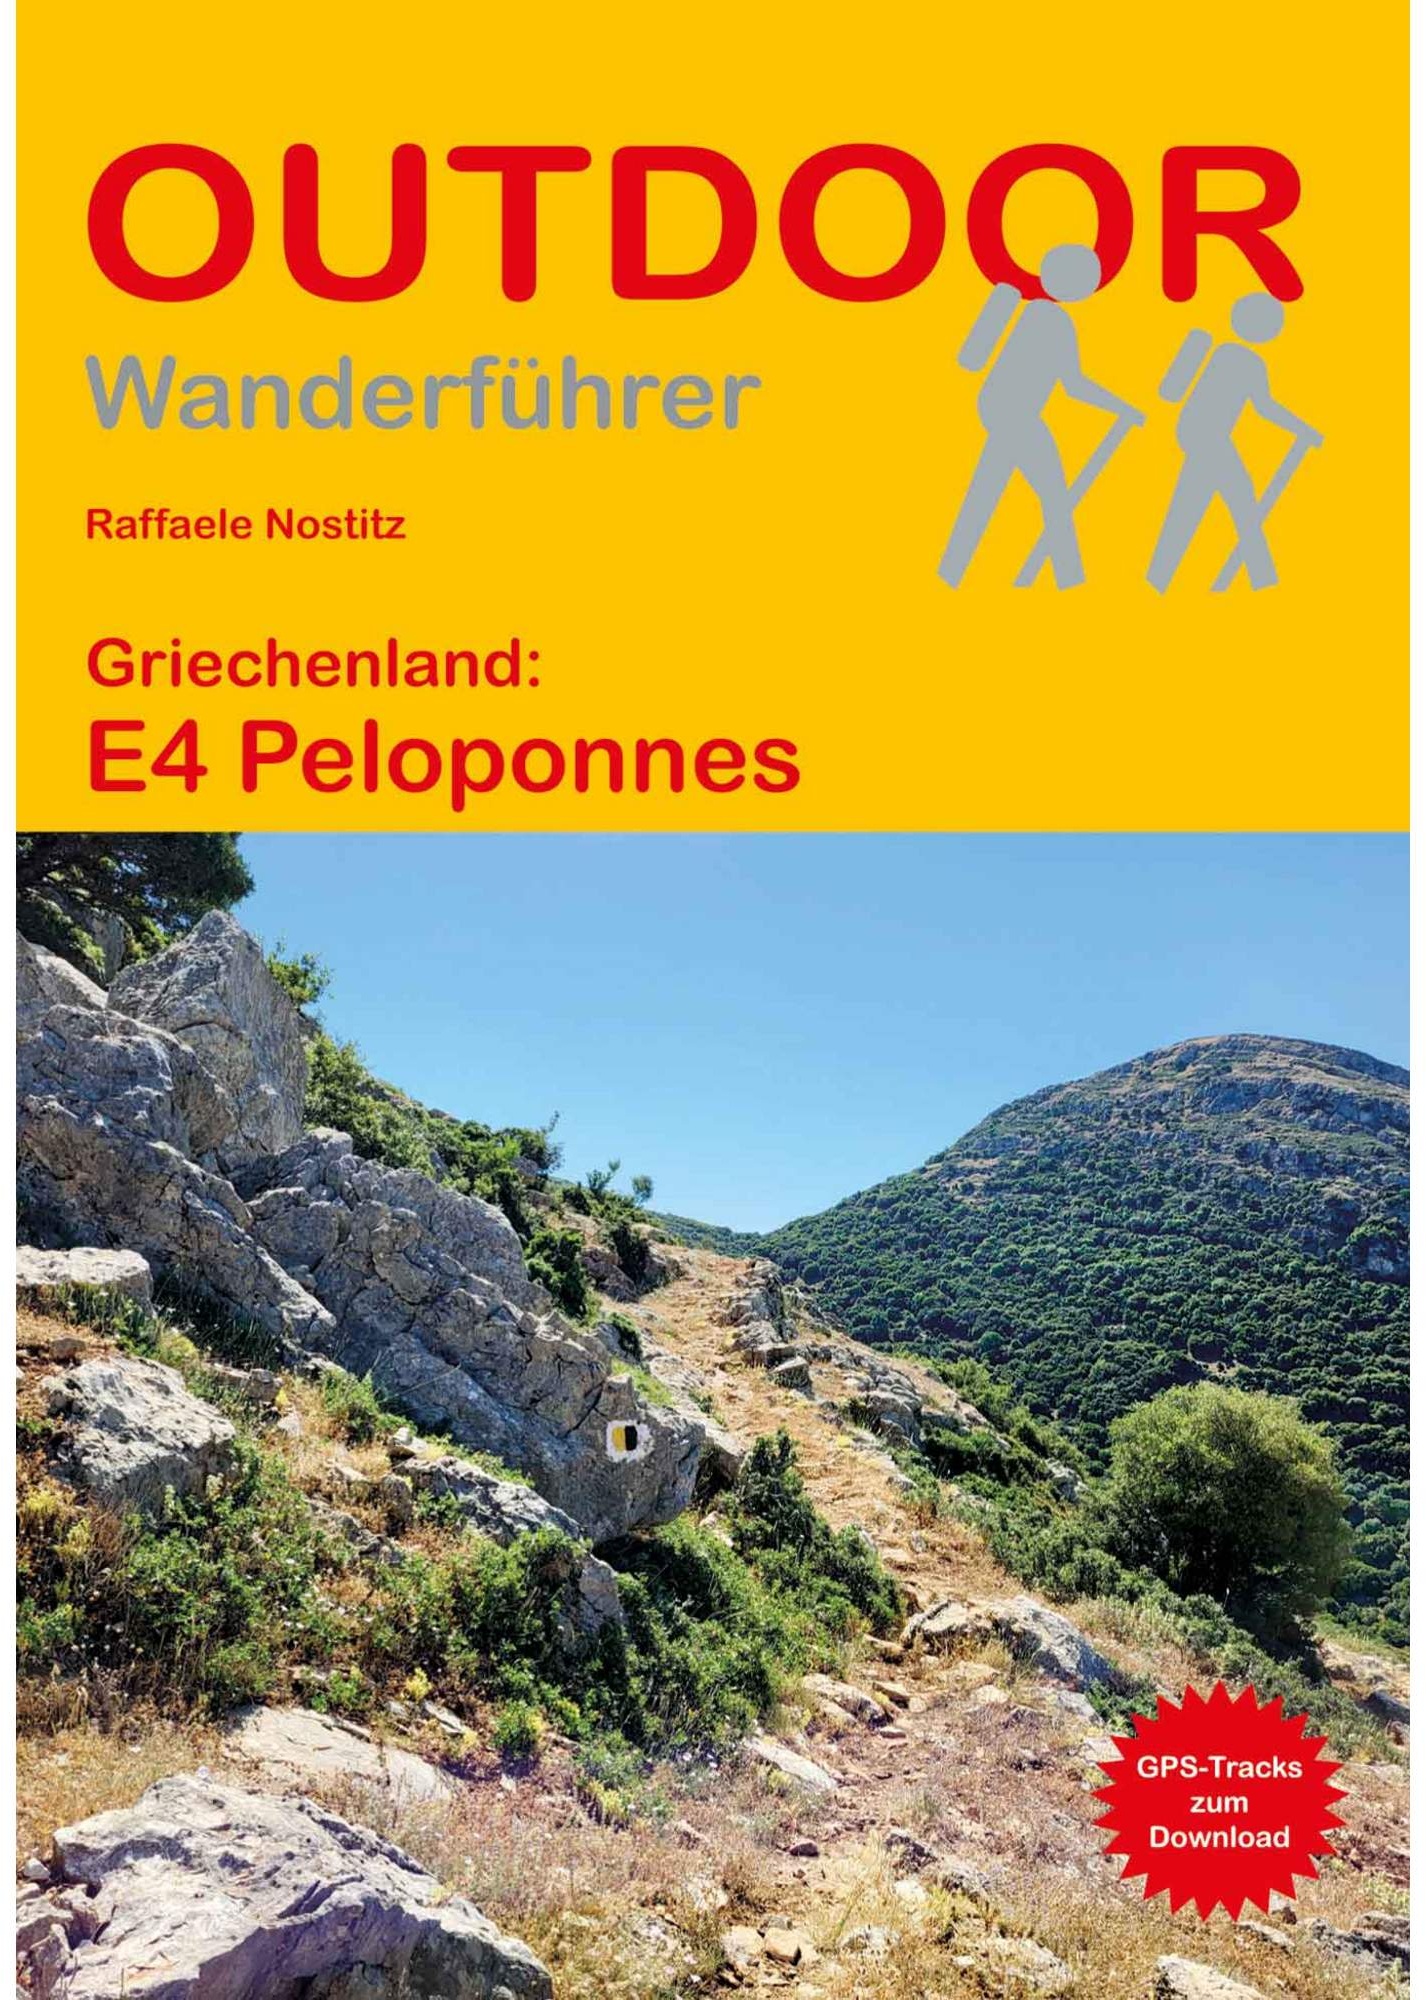 GRIECHENLAND: E4 PELOPONNES -  Wanderführer Südosteuropa - Wanderführer|Fernwanderwege|Griechenland